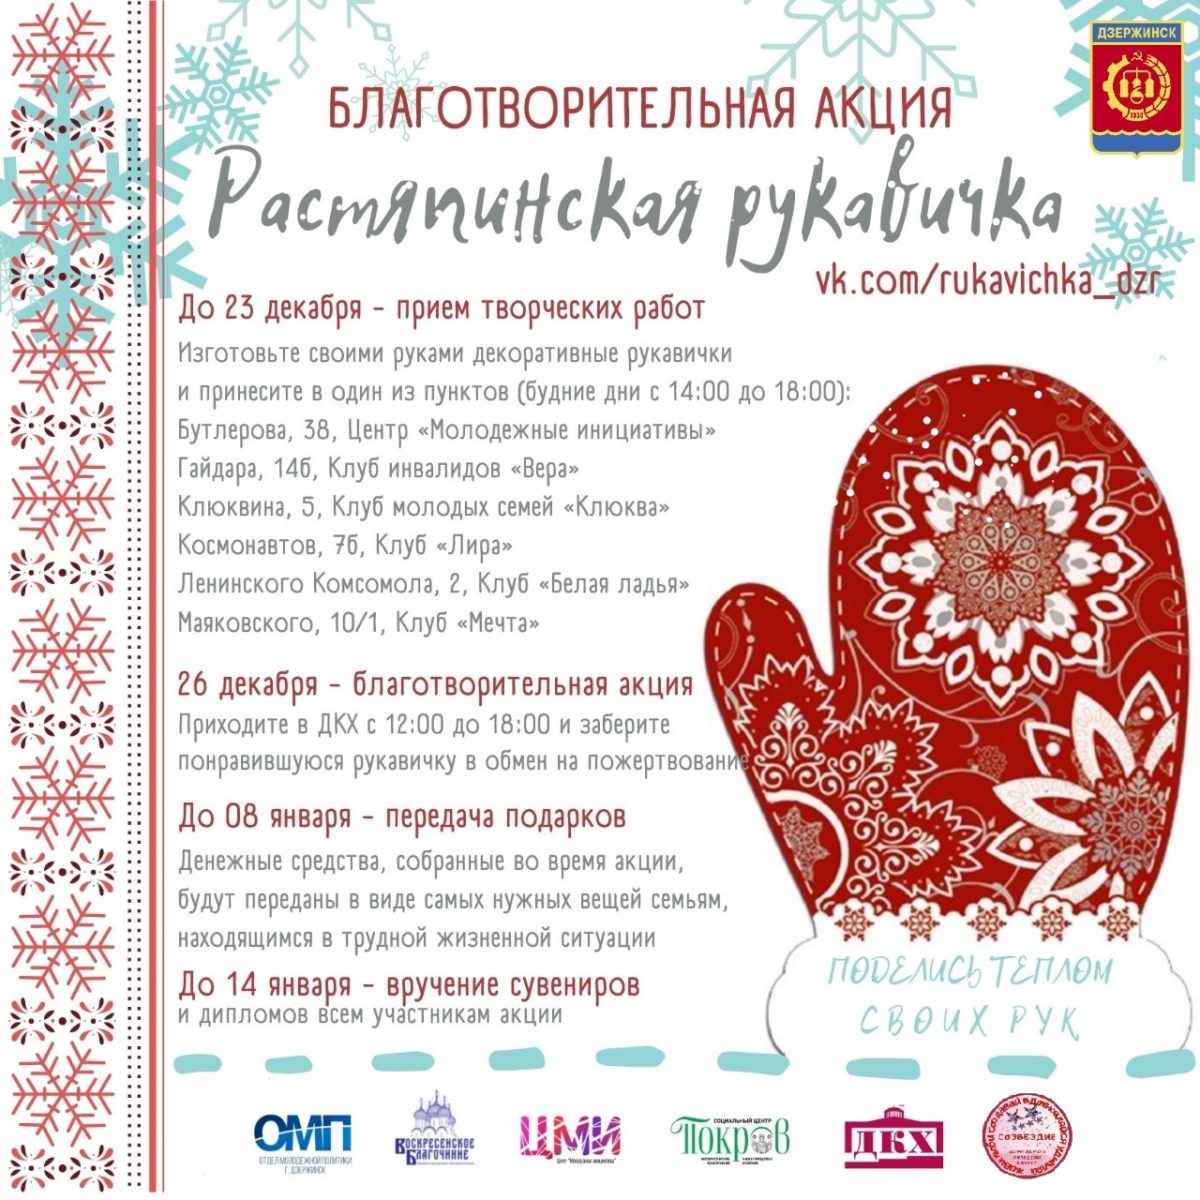 Дзержинцы могут принять участие в благотворительной акции «Растяпинская рукавичка»